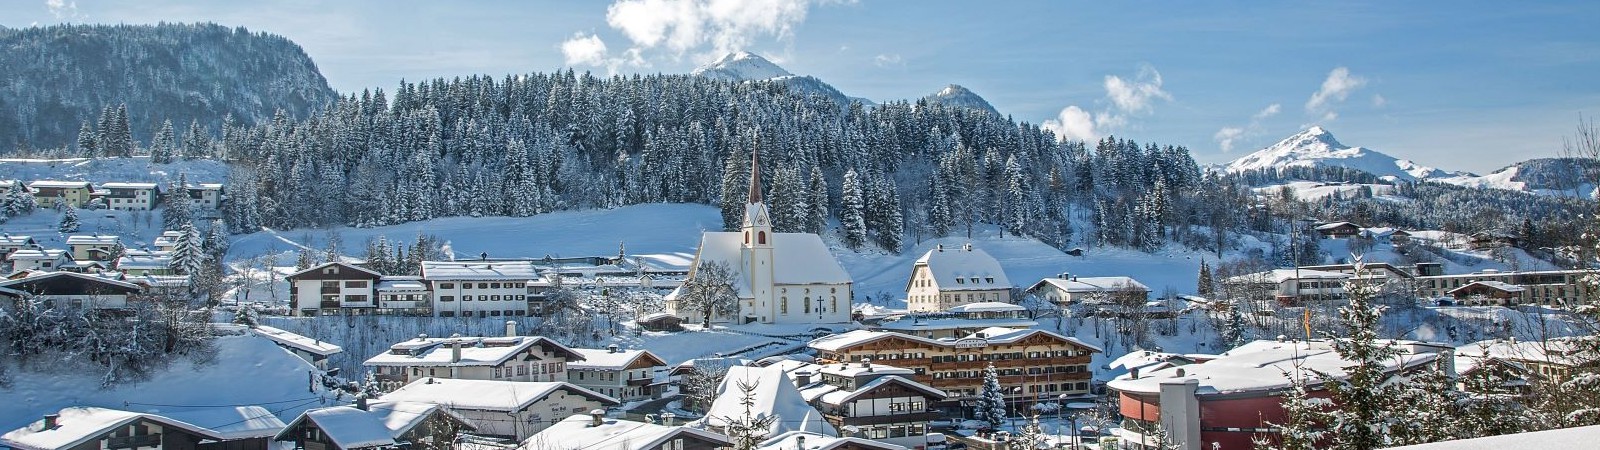 Het dorpje Fieberbrunn in de winter